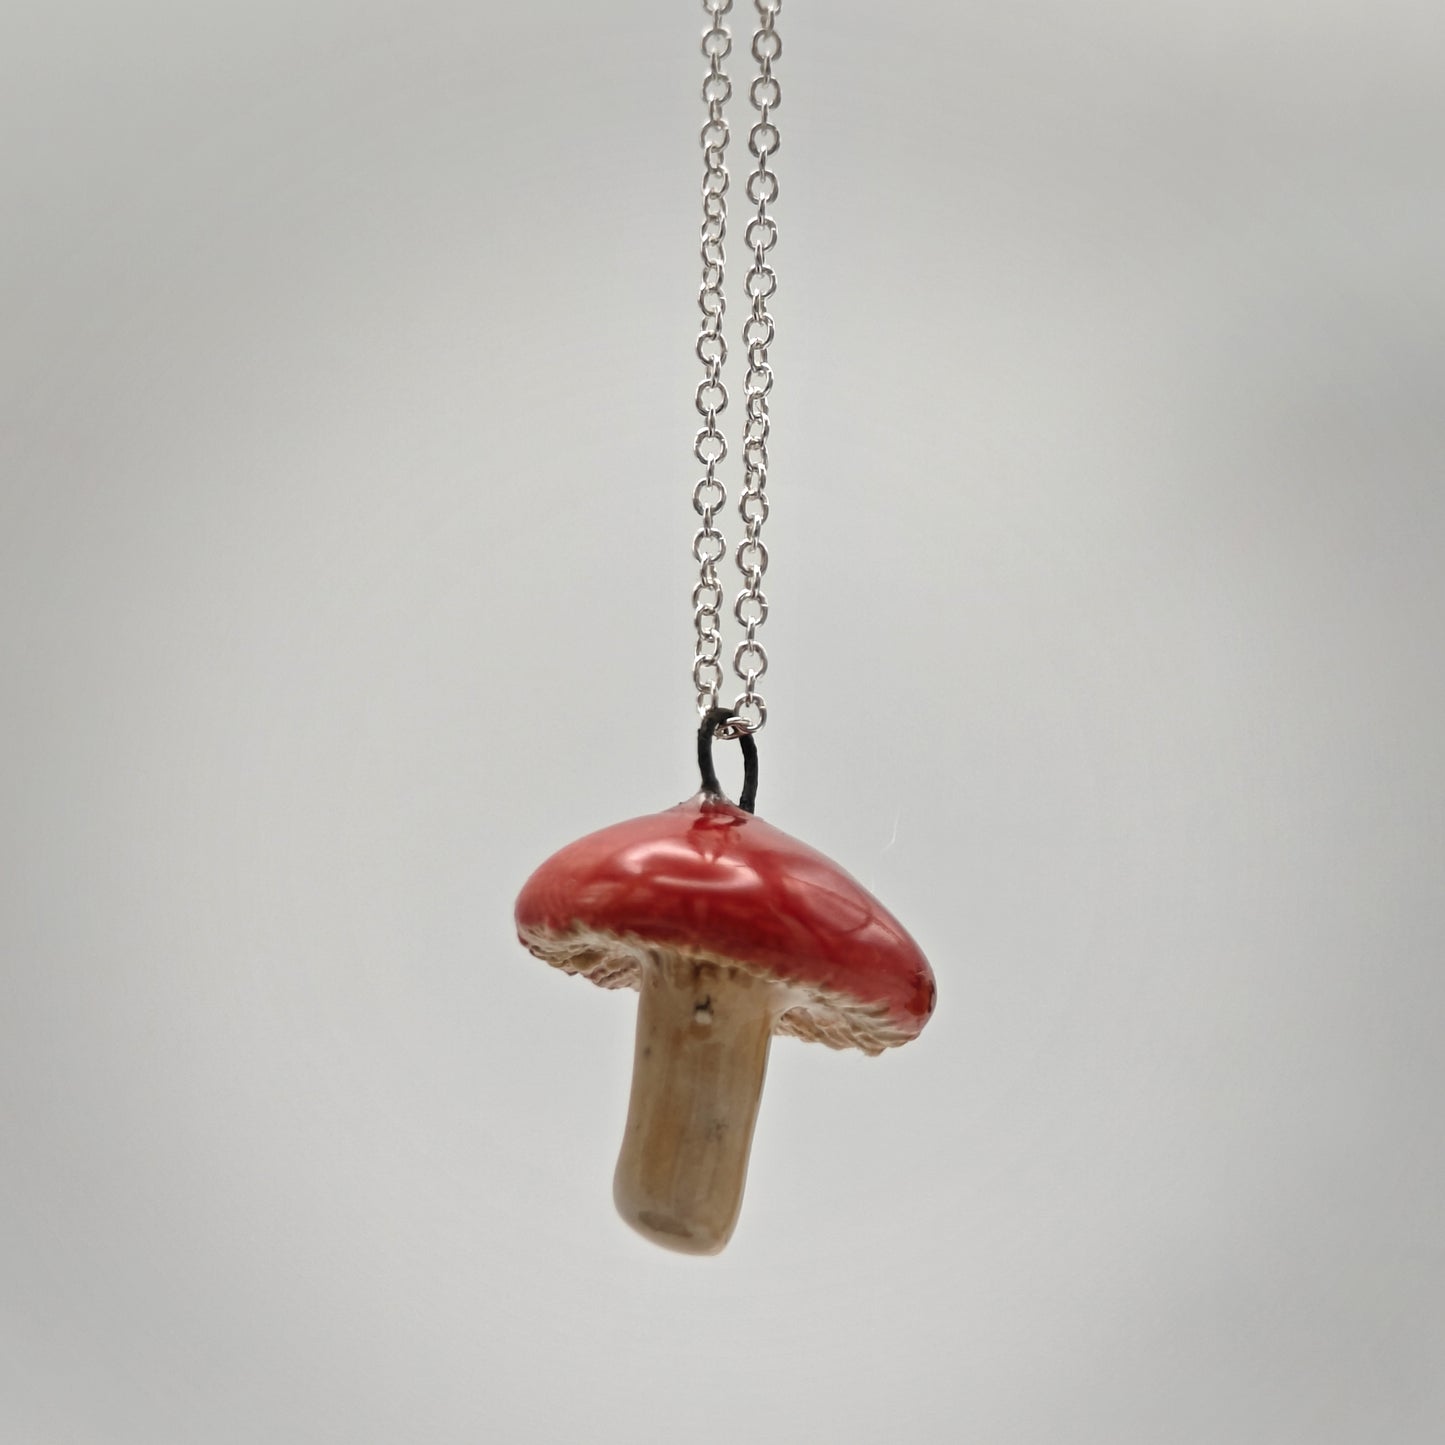 Ceramic Pendant Necklace - Mushroom - Red